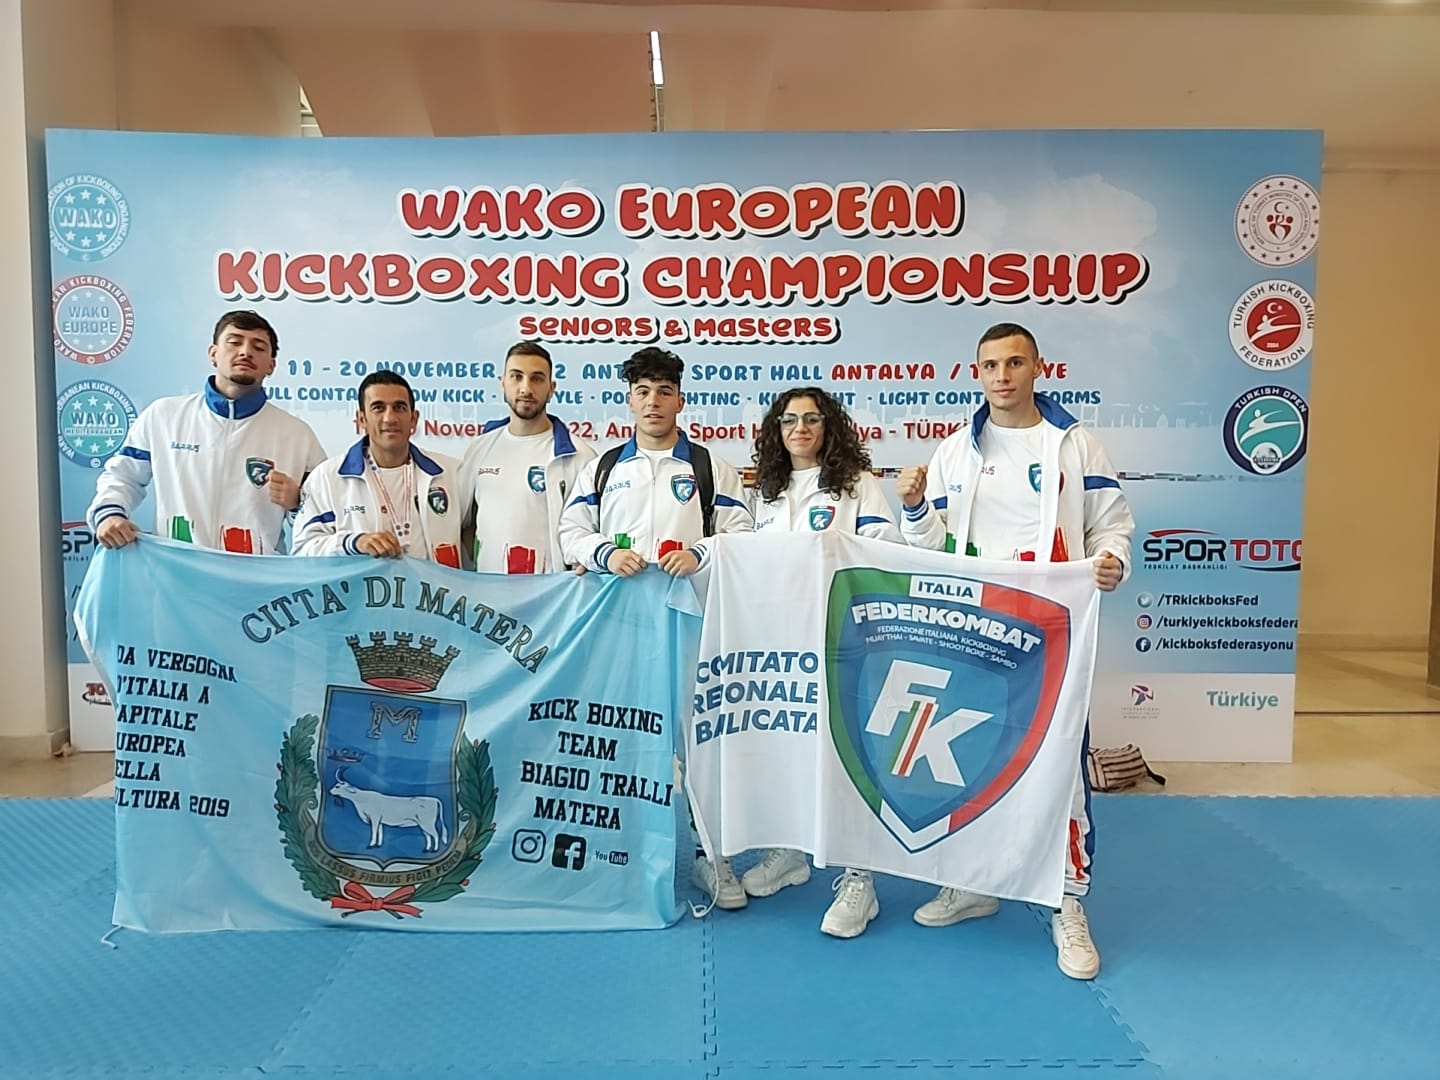 Campionati Europei di Kickboxing WAKO Senior, i risultati degli atleti lucani seguiti dal Direttore Tecnico Biagio Tralli